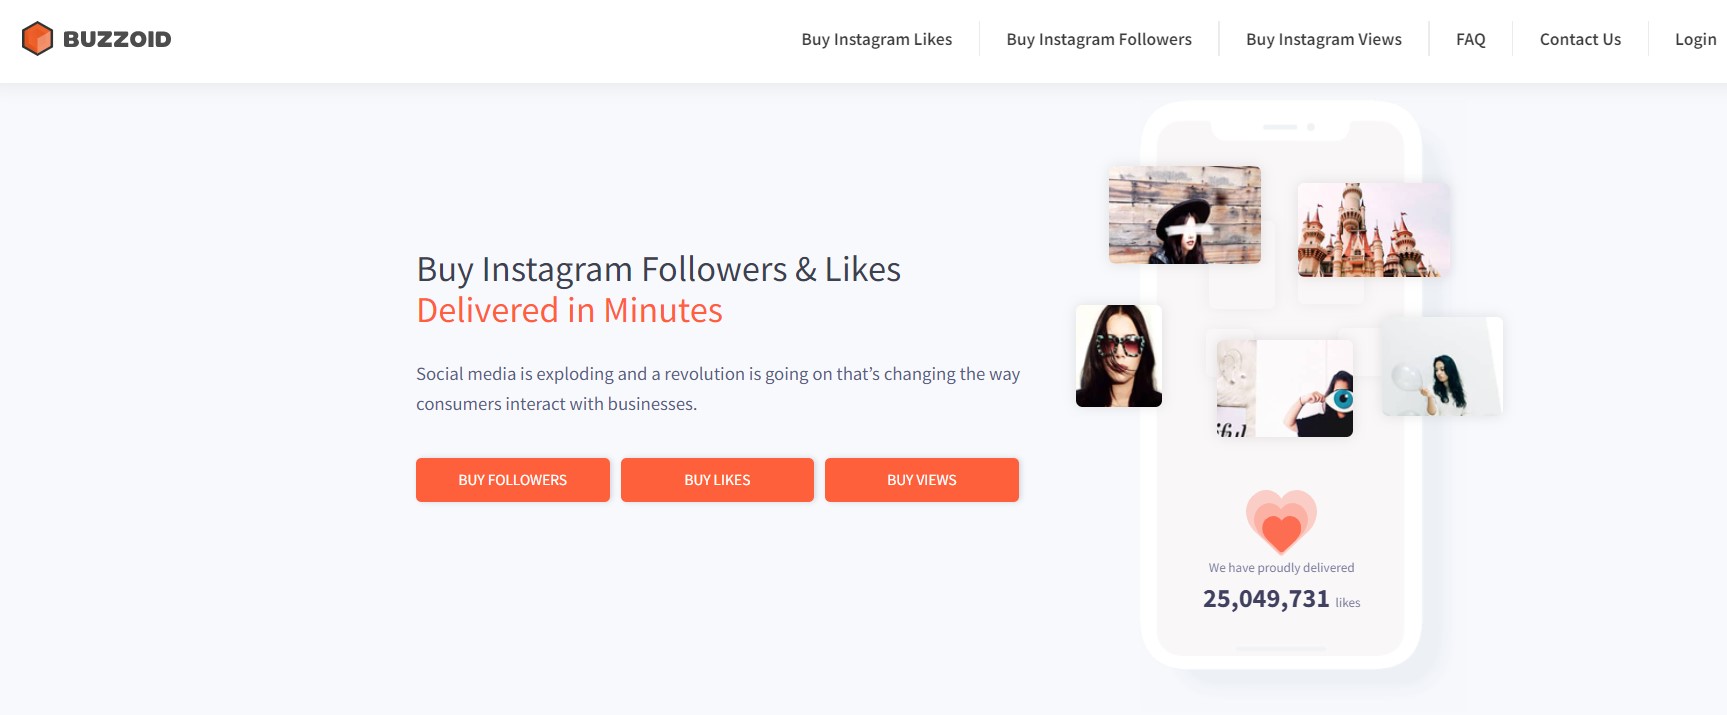 Use o Buzzoid para comprar seguidores no Instagram